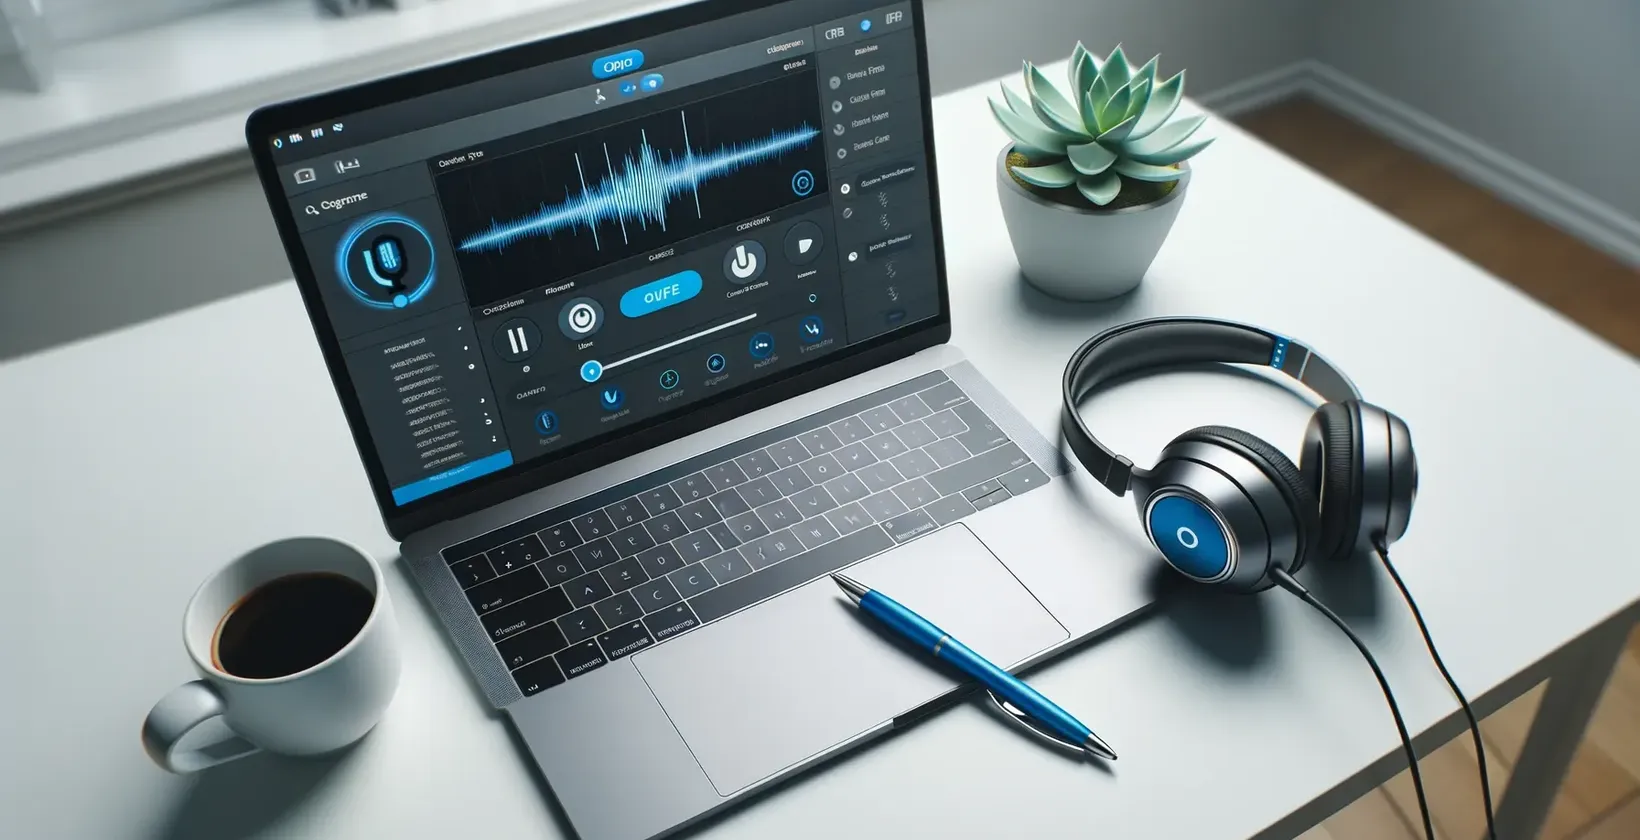 Çalışma alanı, ses dalga formu, düzenleme yazılımı ve kaliteli kulaklıklarla MacBook özelliğine sahiptir.